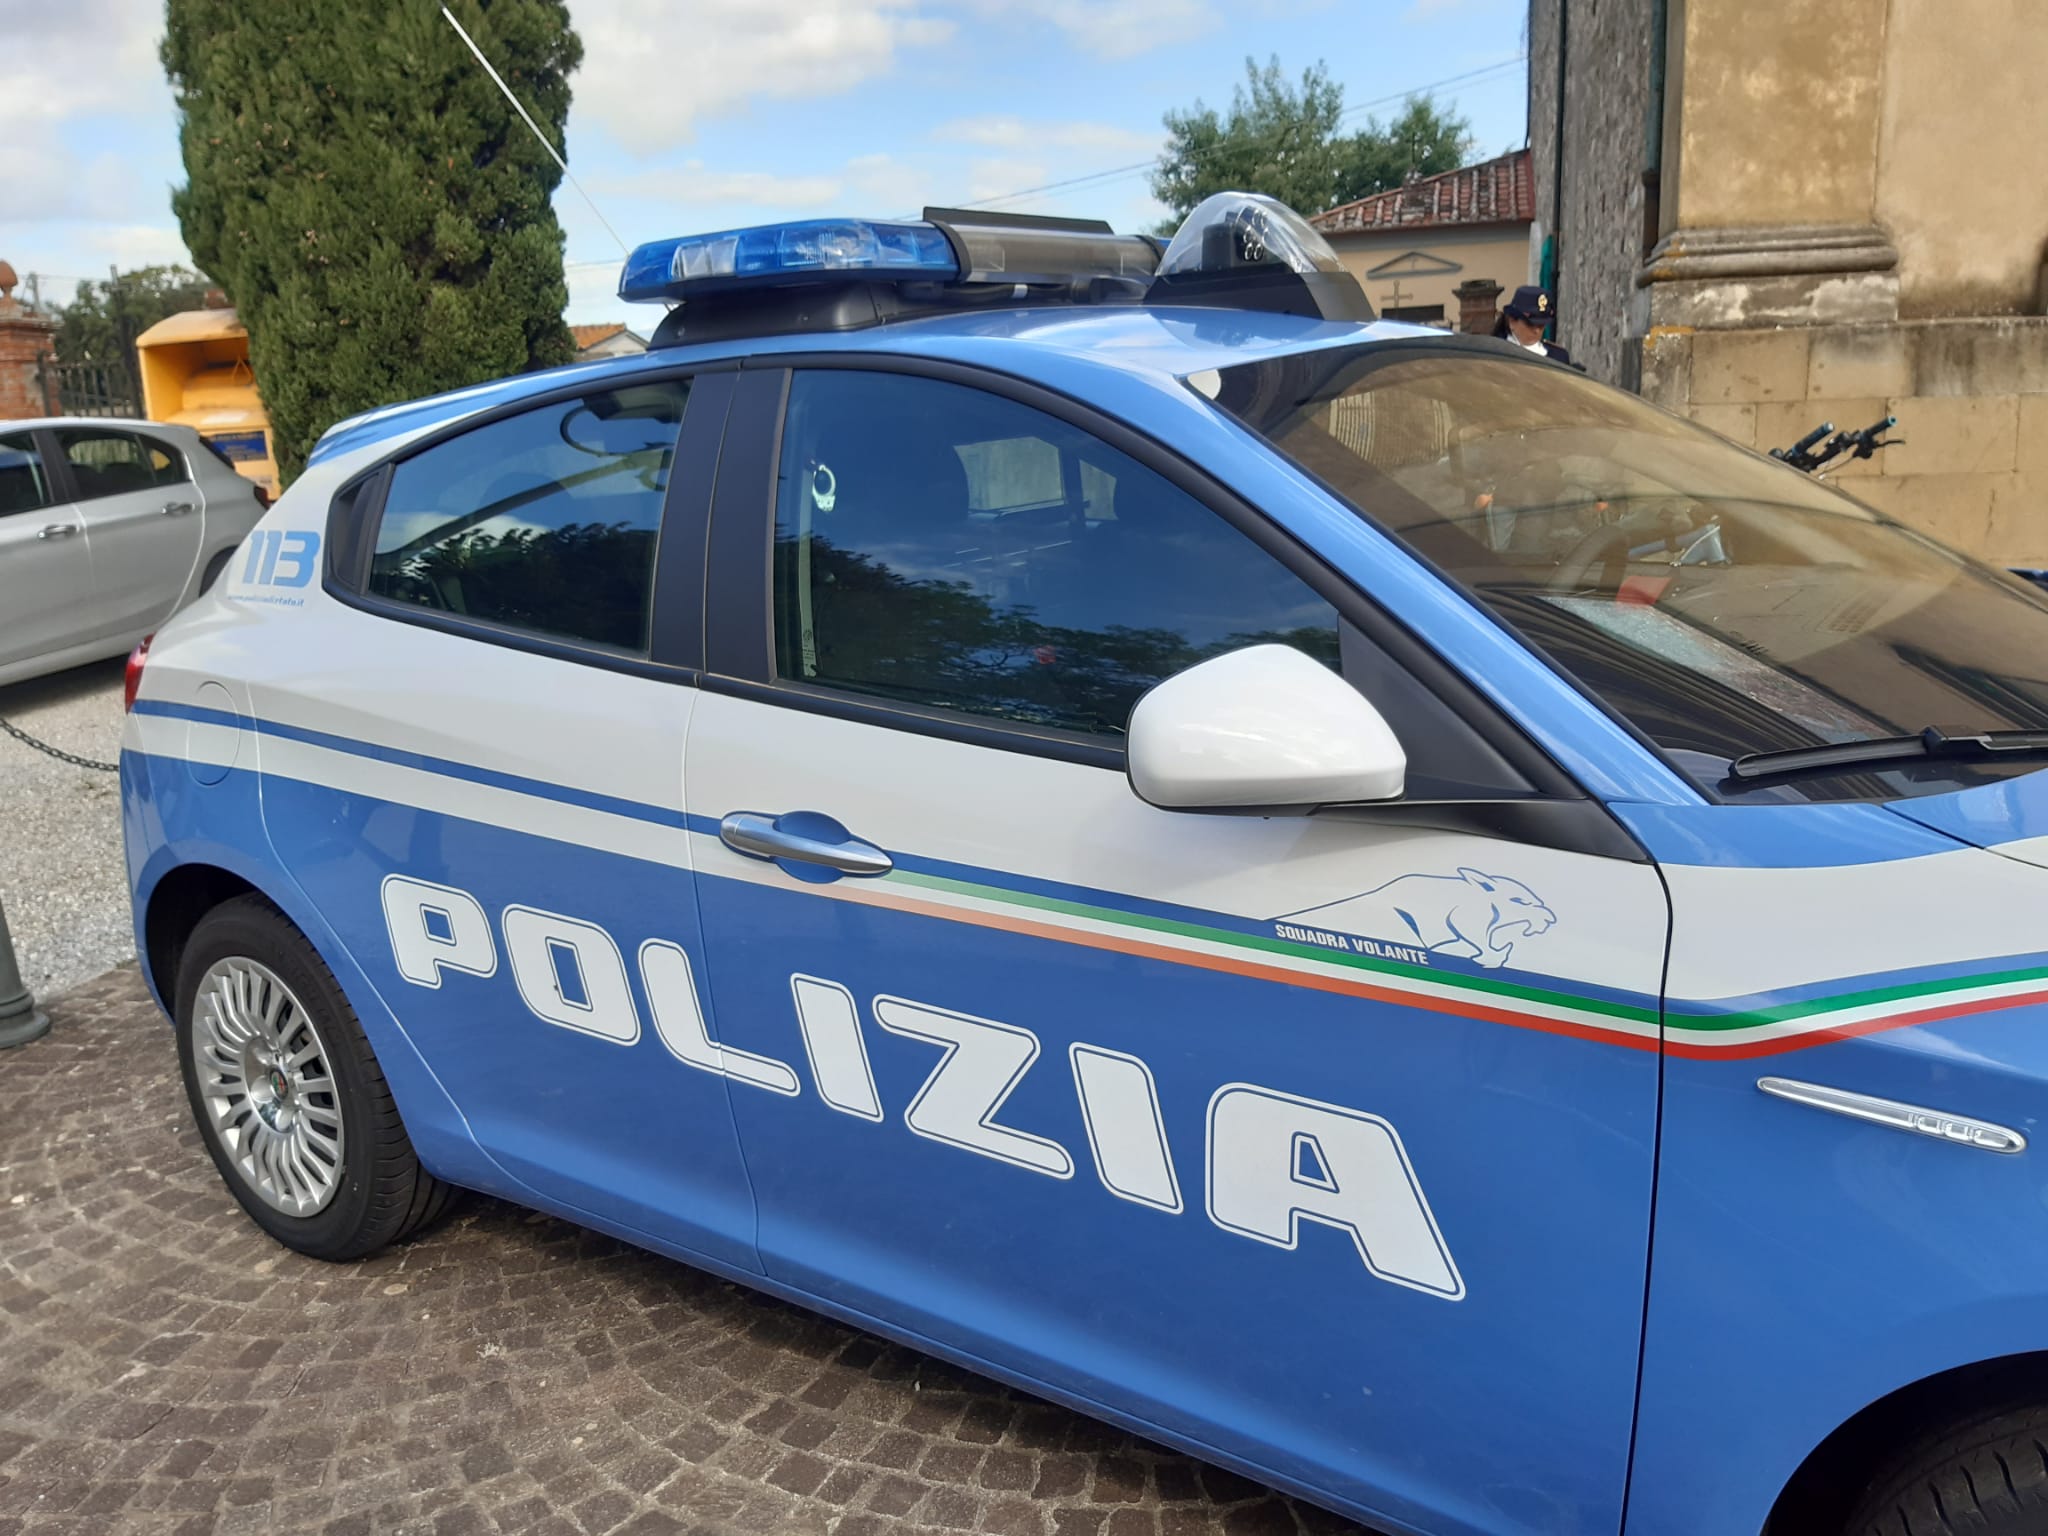 Lite nel negozio di telefonia a Pisa, interviene la polizia